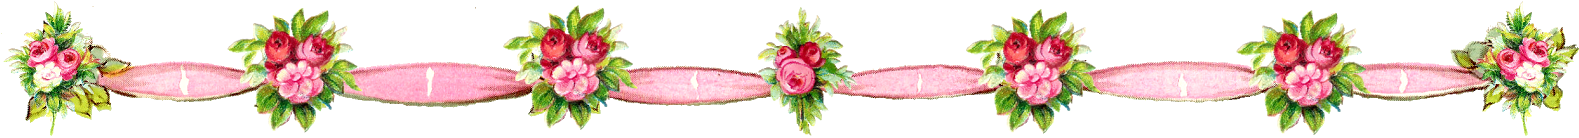 Digital Flower Border Downloads - Retro Girly Rosa Rosen Und Polka-punkte Keramikfliese (1600x137)